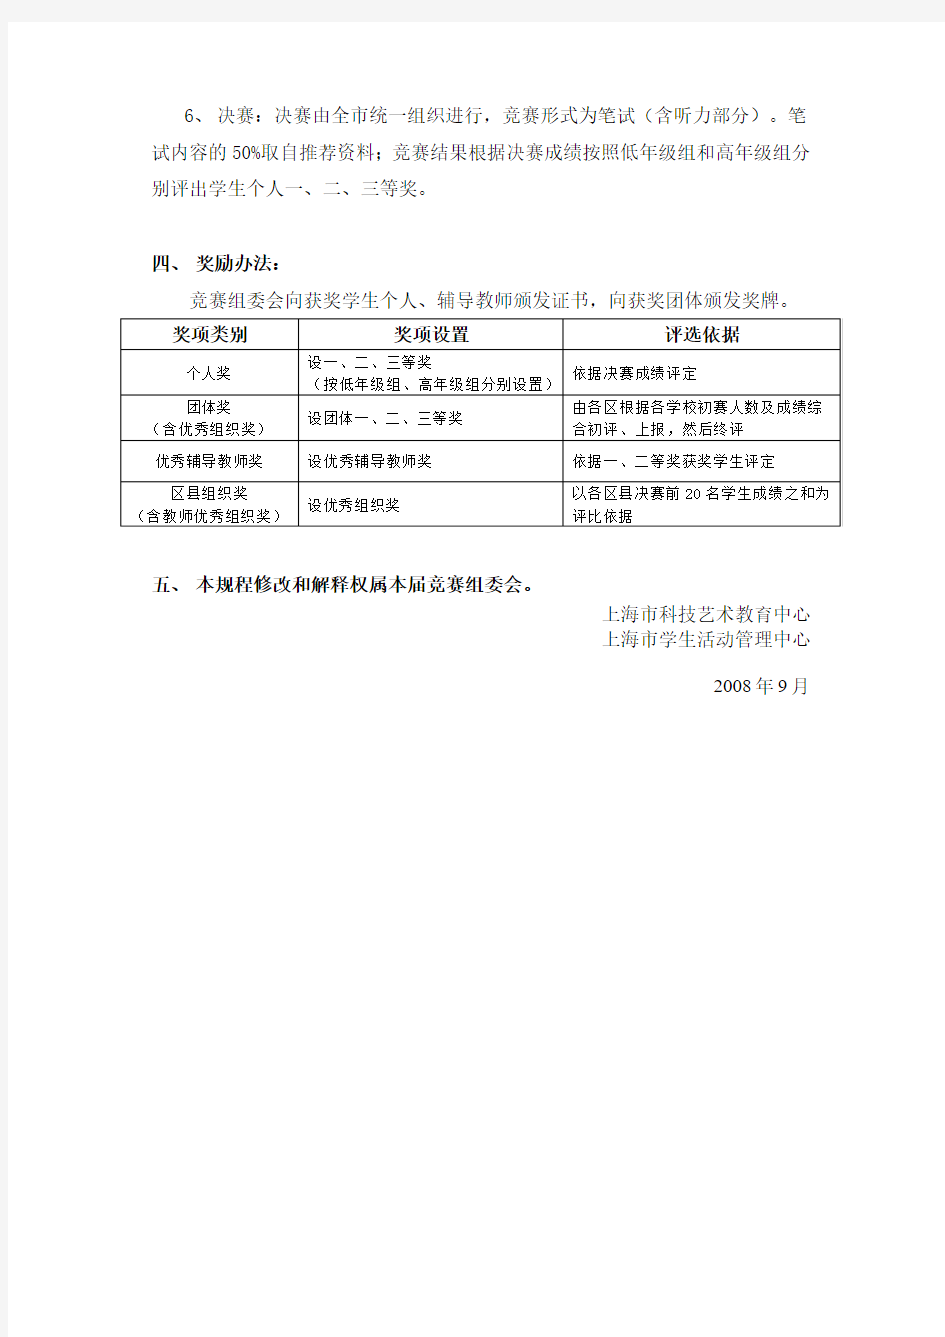 上海市第六届小学生科普英语游戏竞赛活动规程